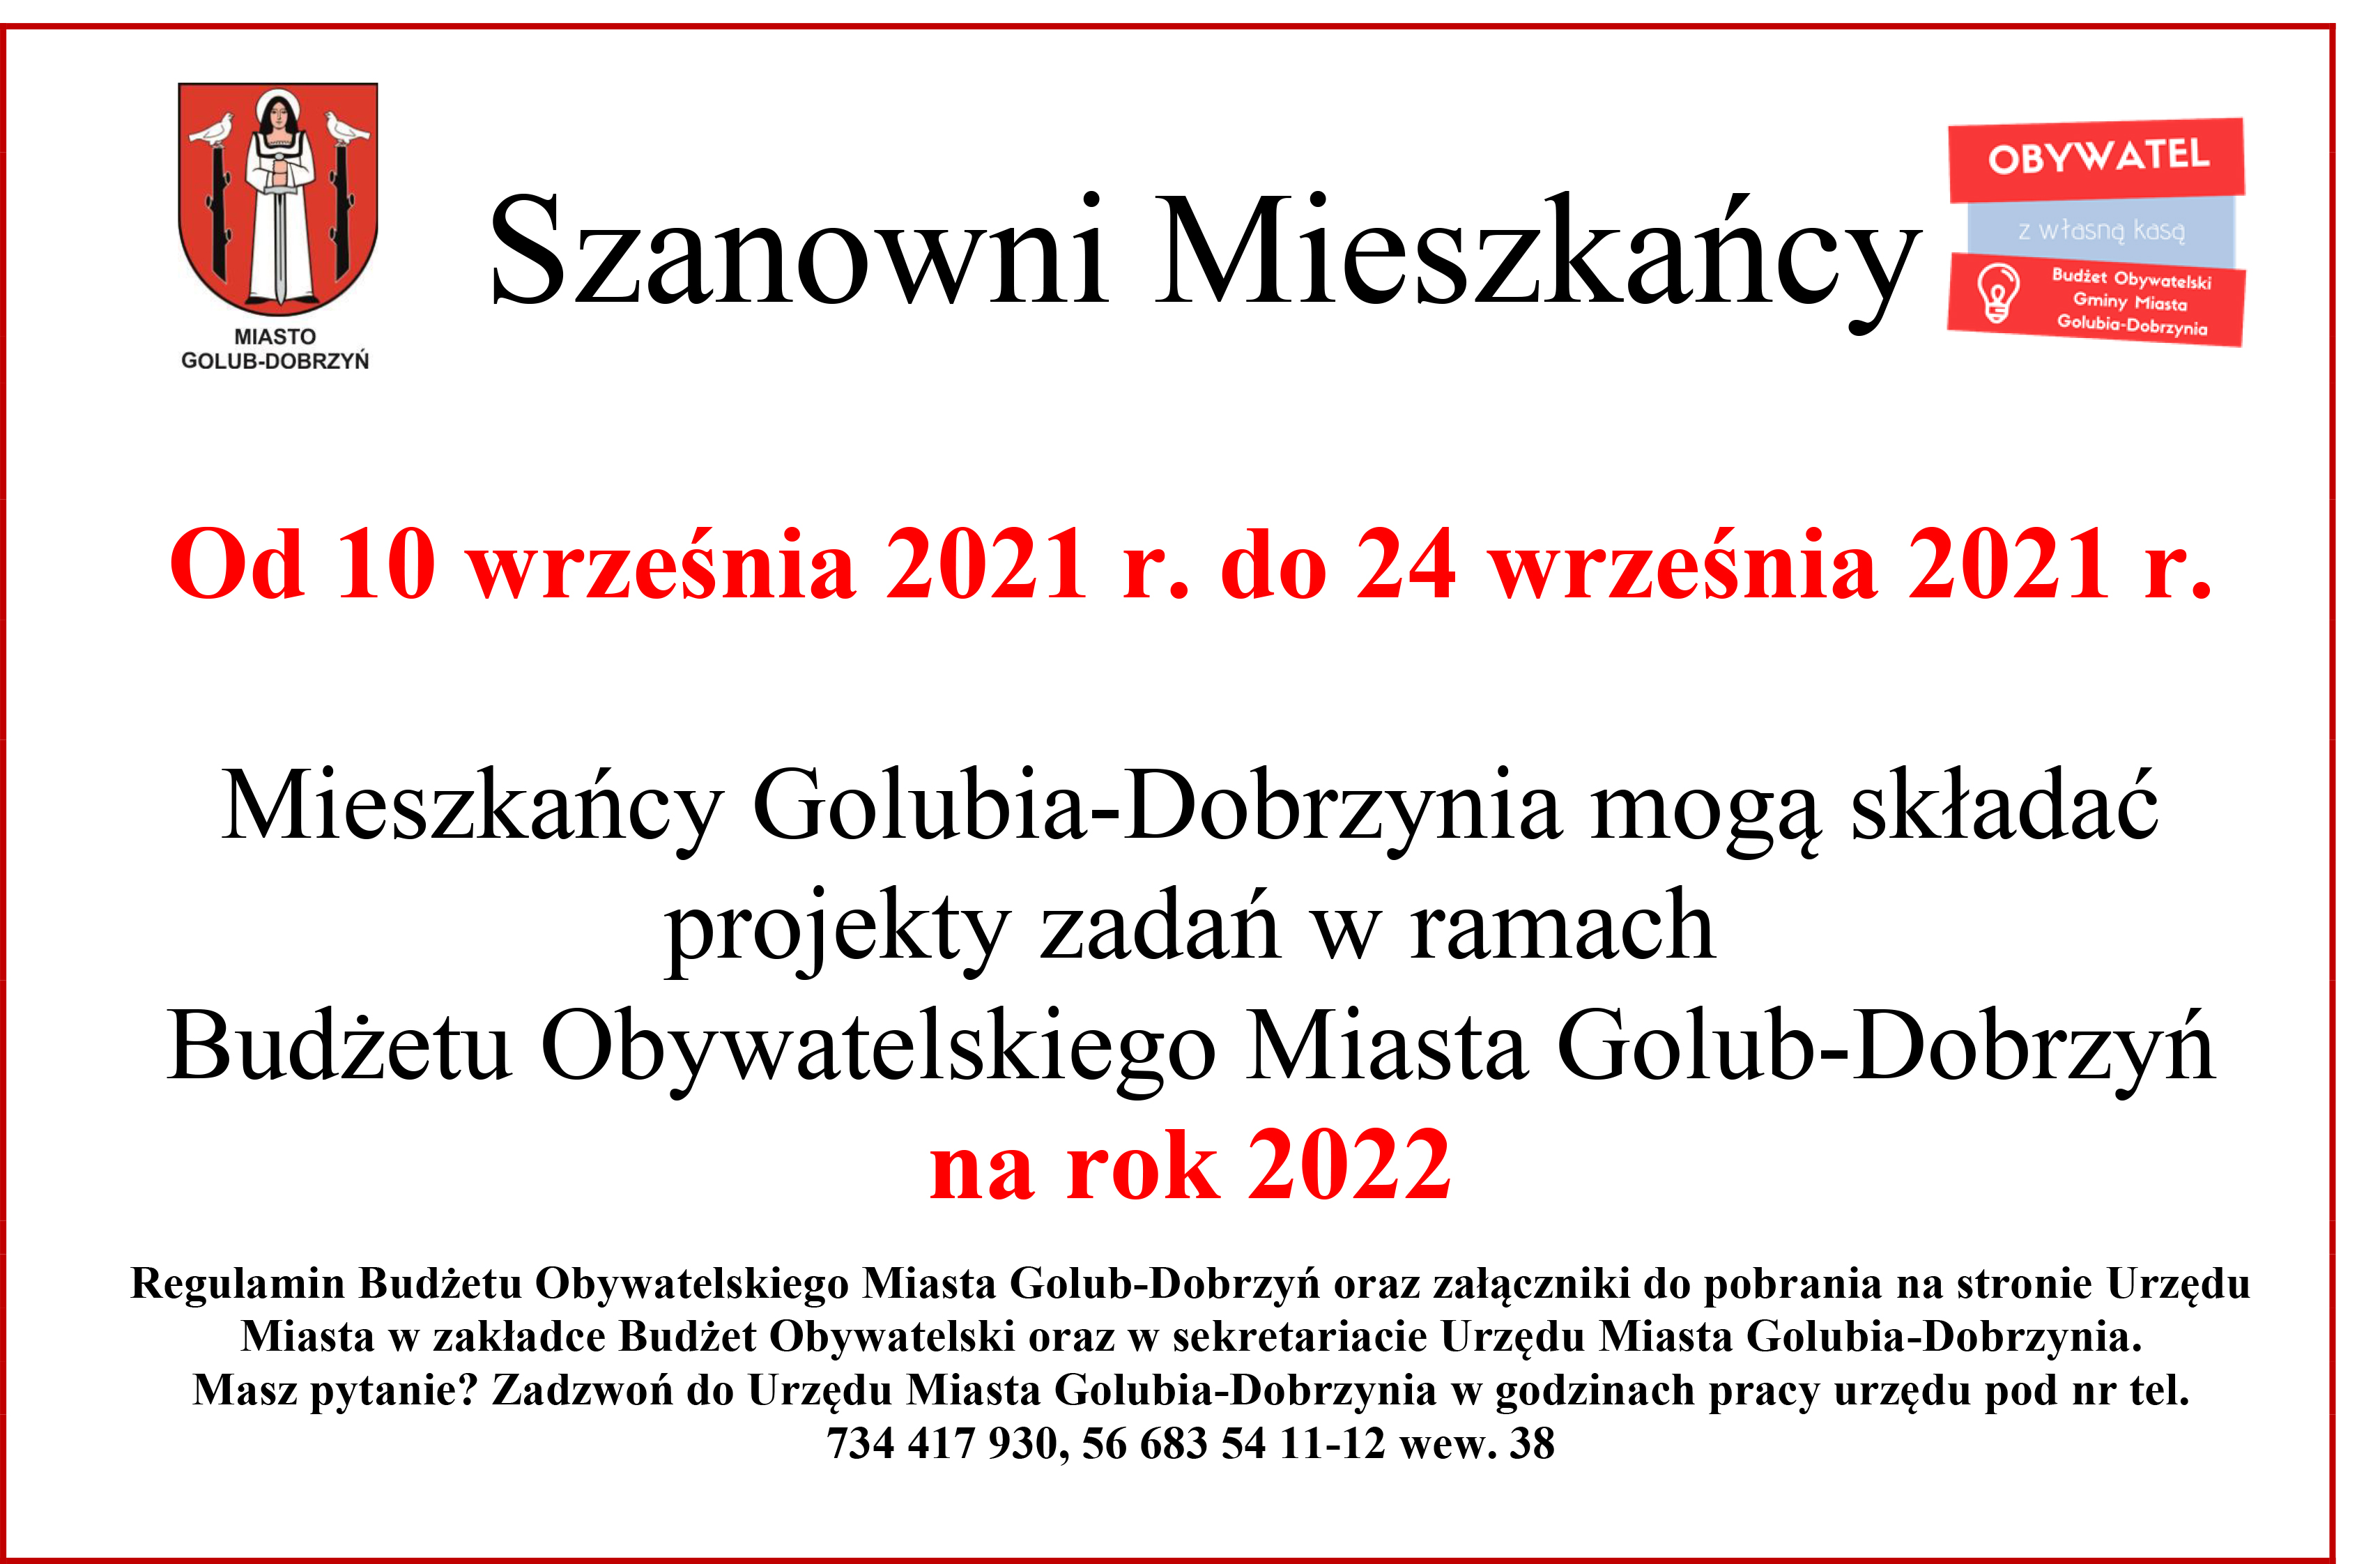 Budżet Obywatelski Miasta Golub-Dobrzyń na rok 2022